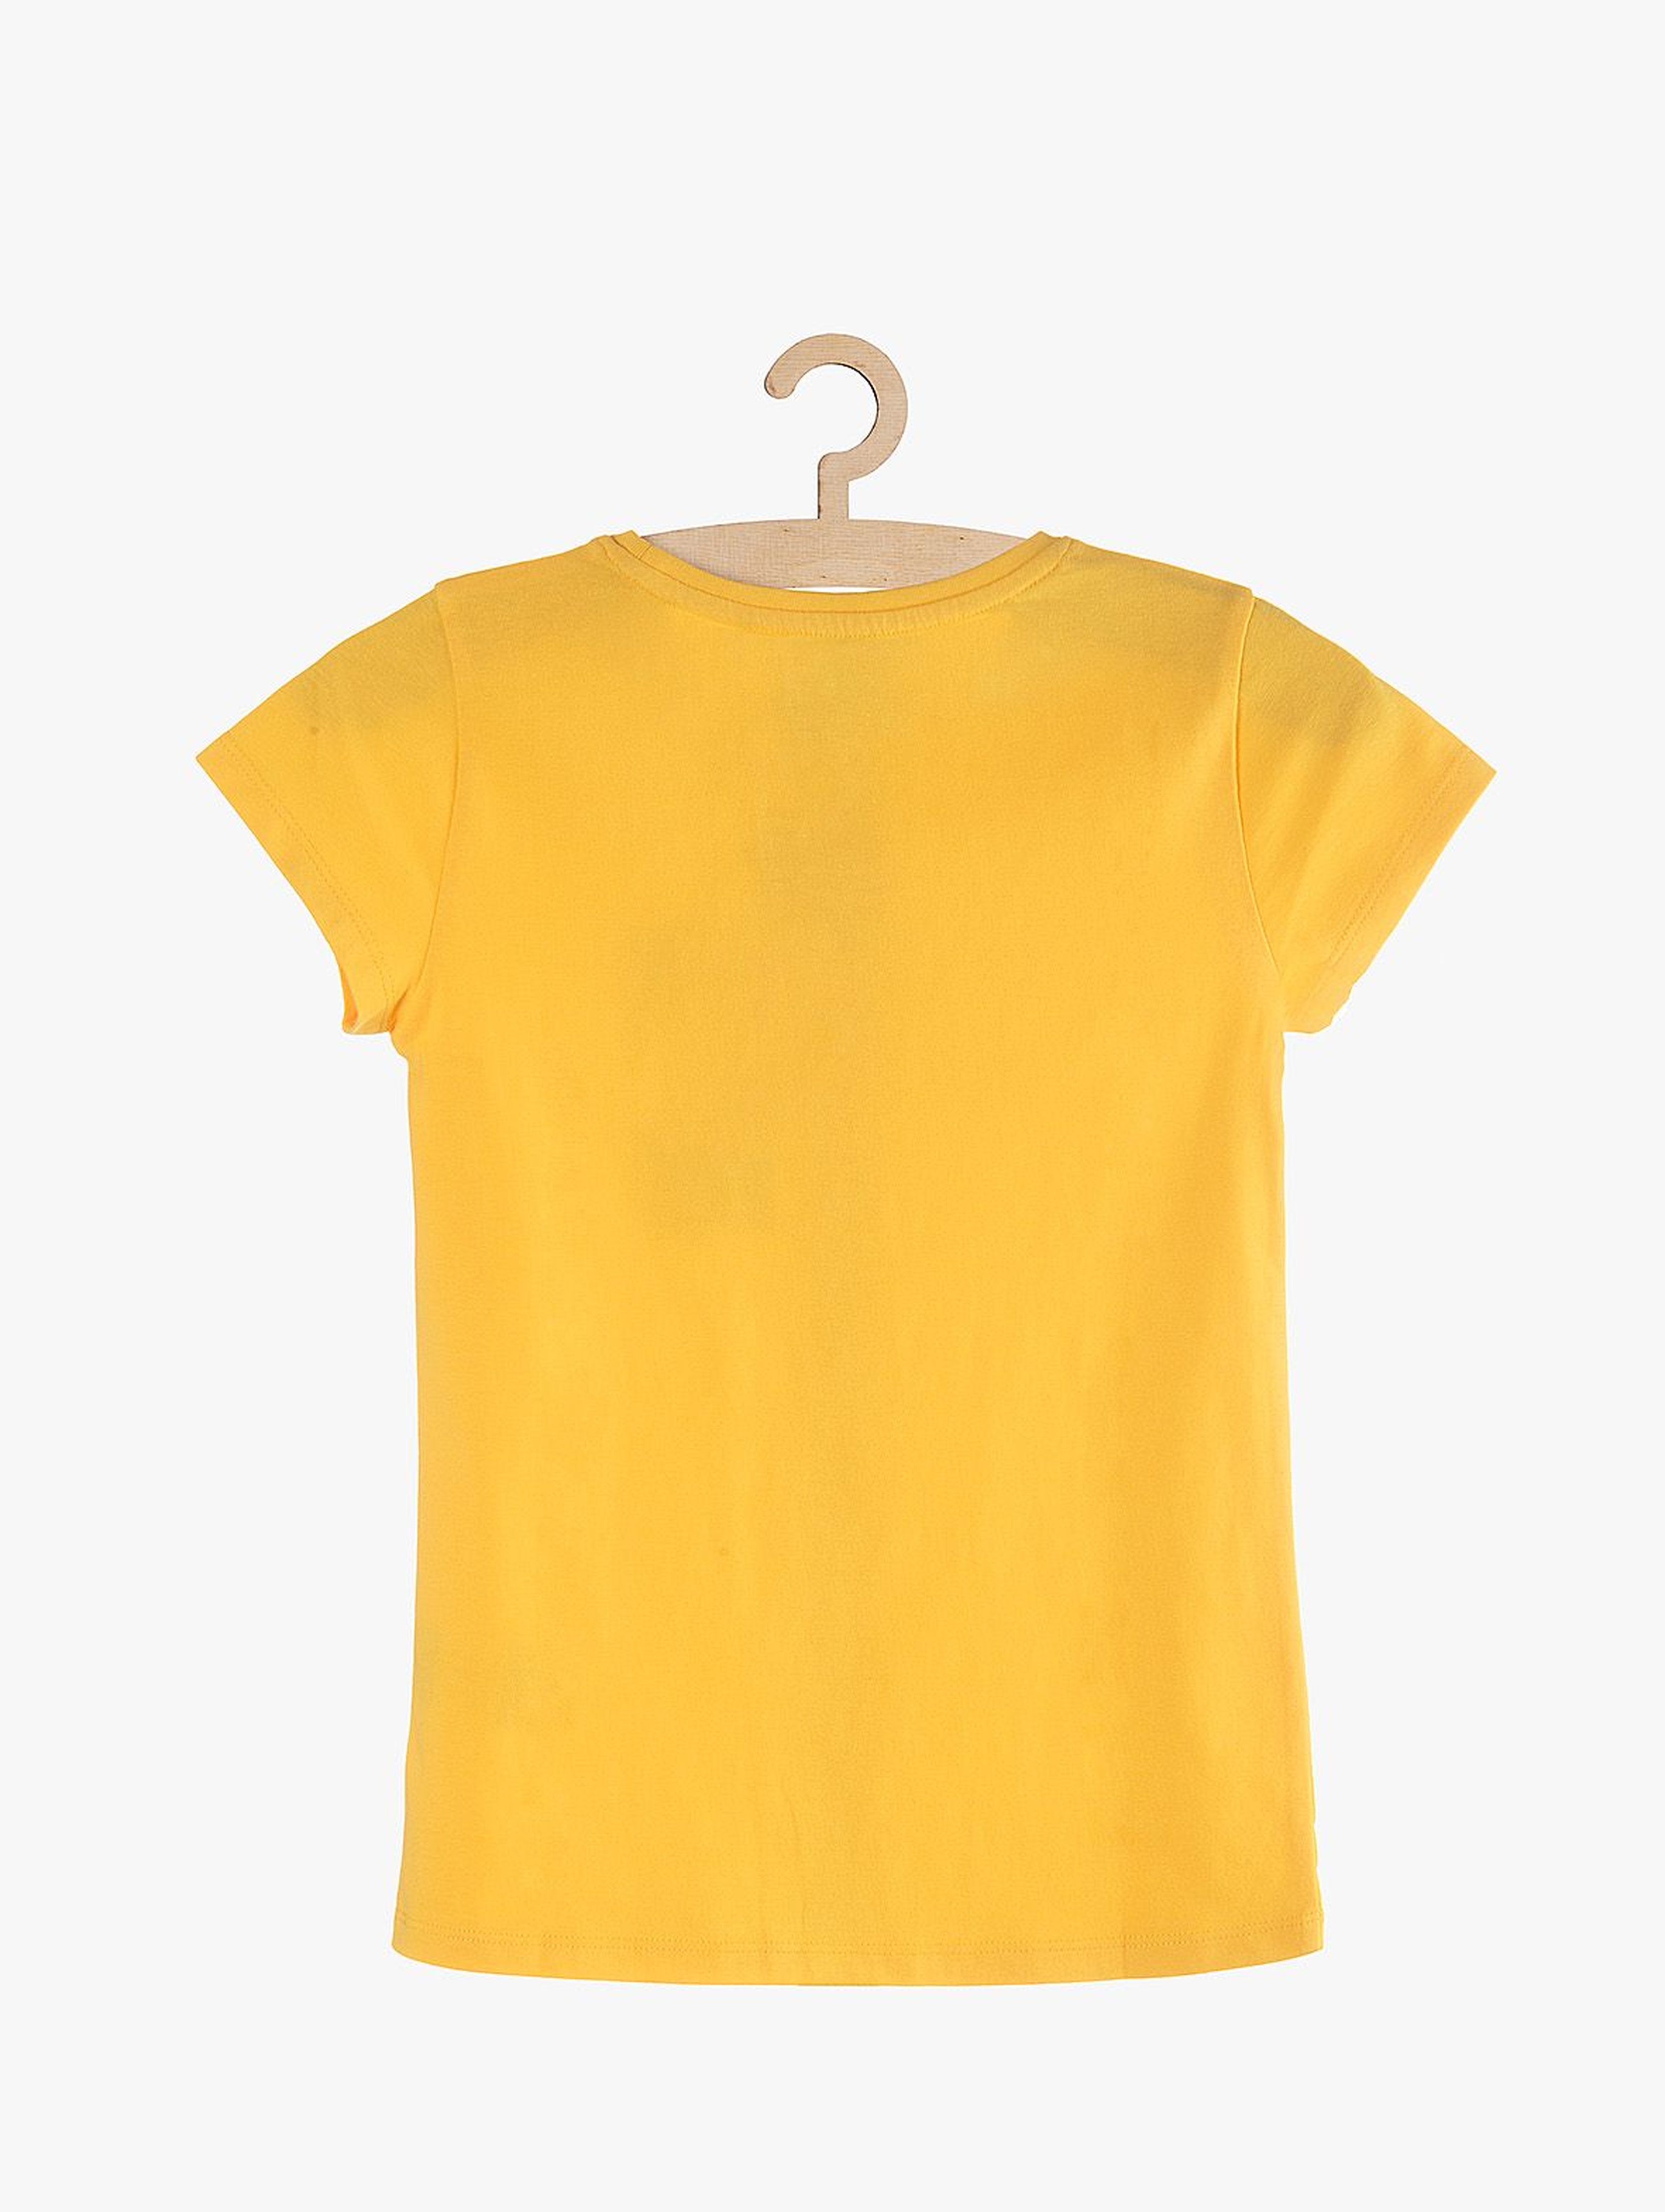 T-Shirt dziewczęcy żółty z napisem Trouble maker